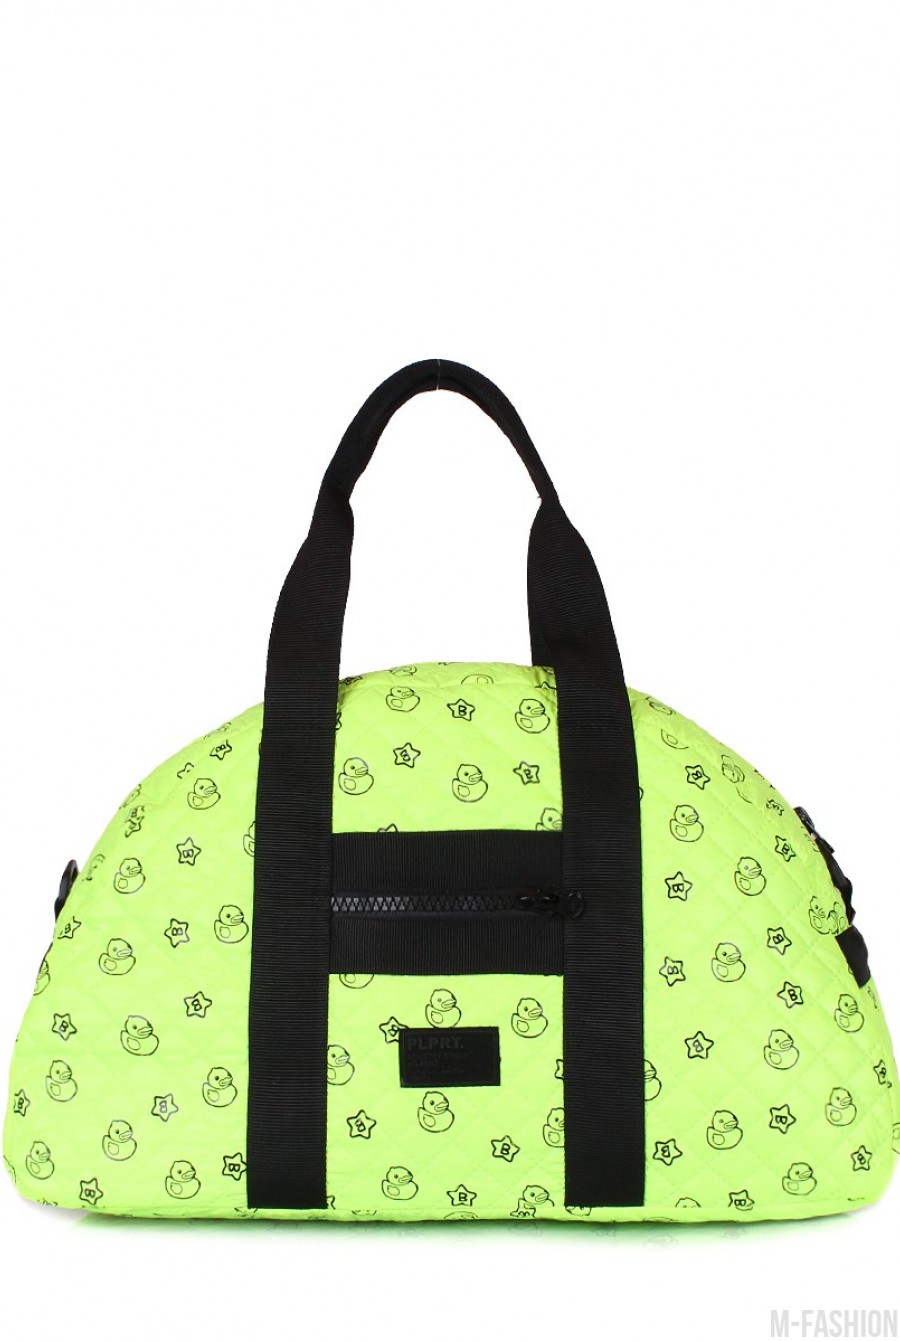 Стеганая дорожная сумка с ярко-зеленой расцветкой и позитивным принтом - Фото 1